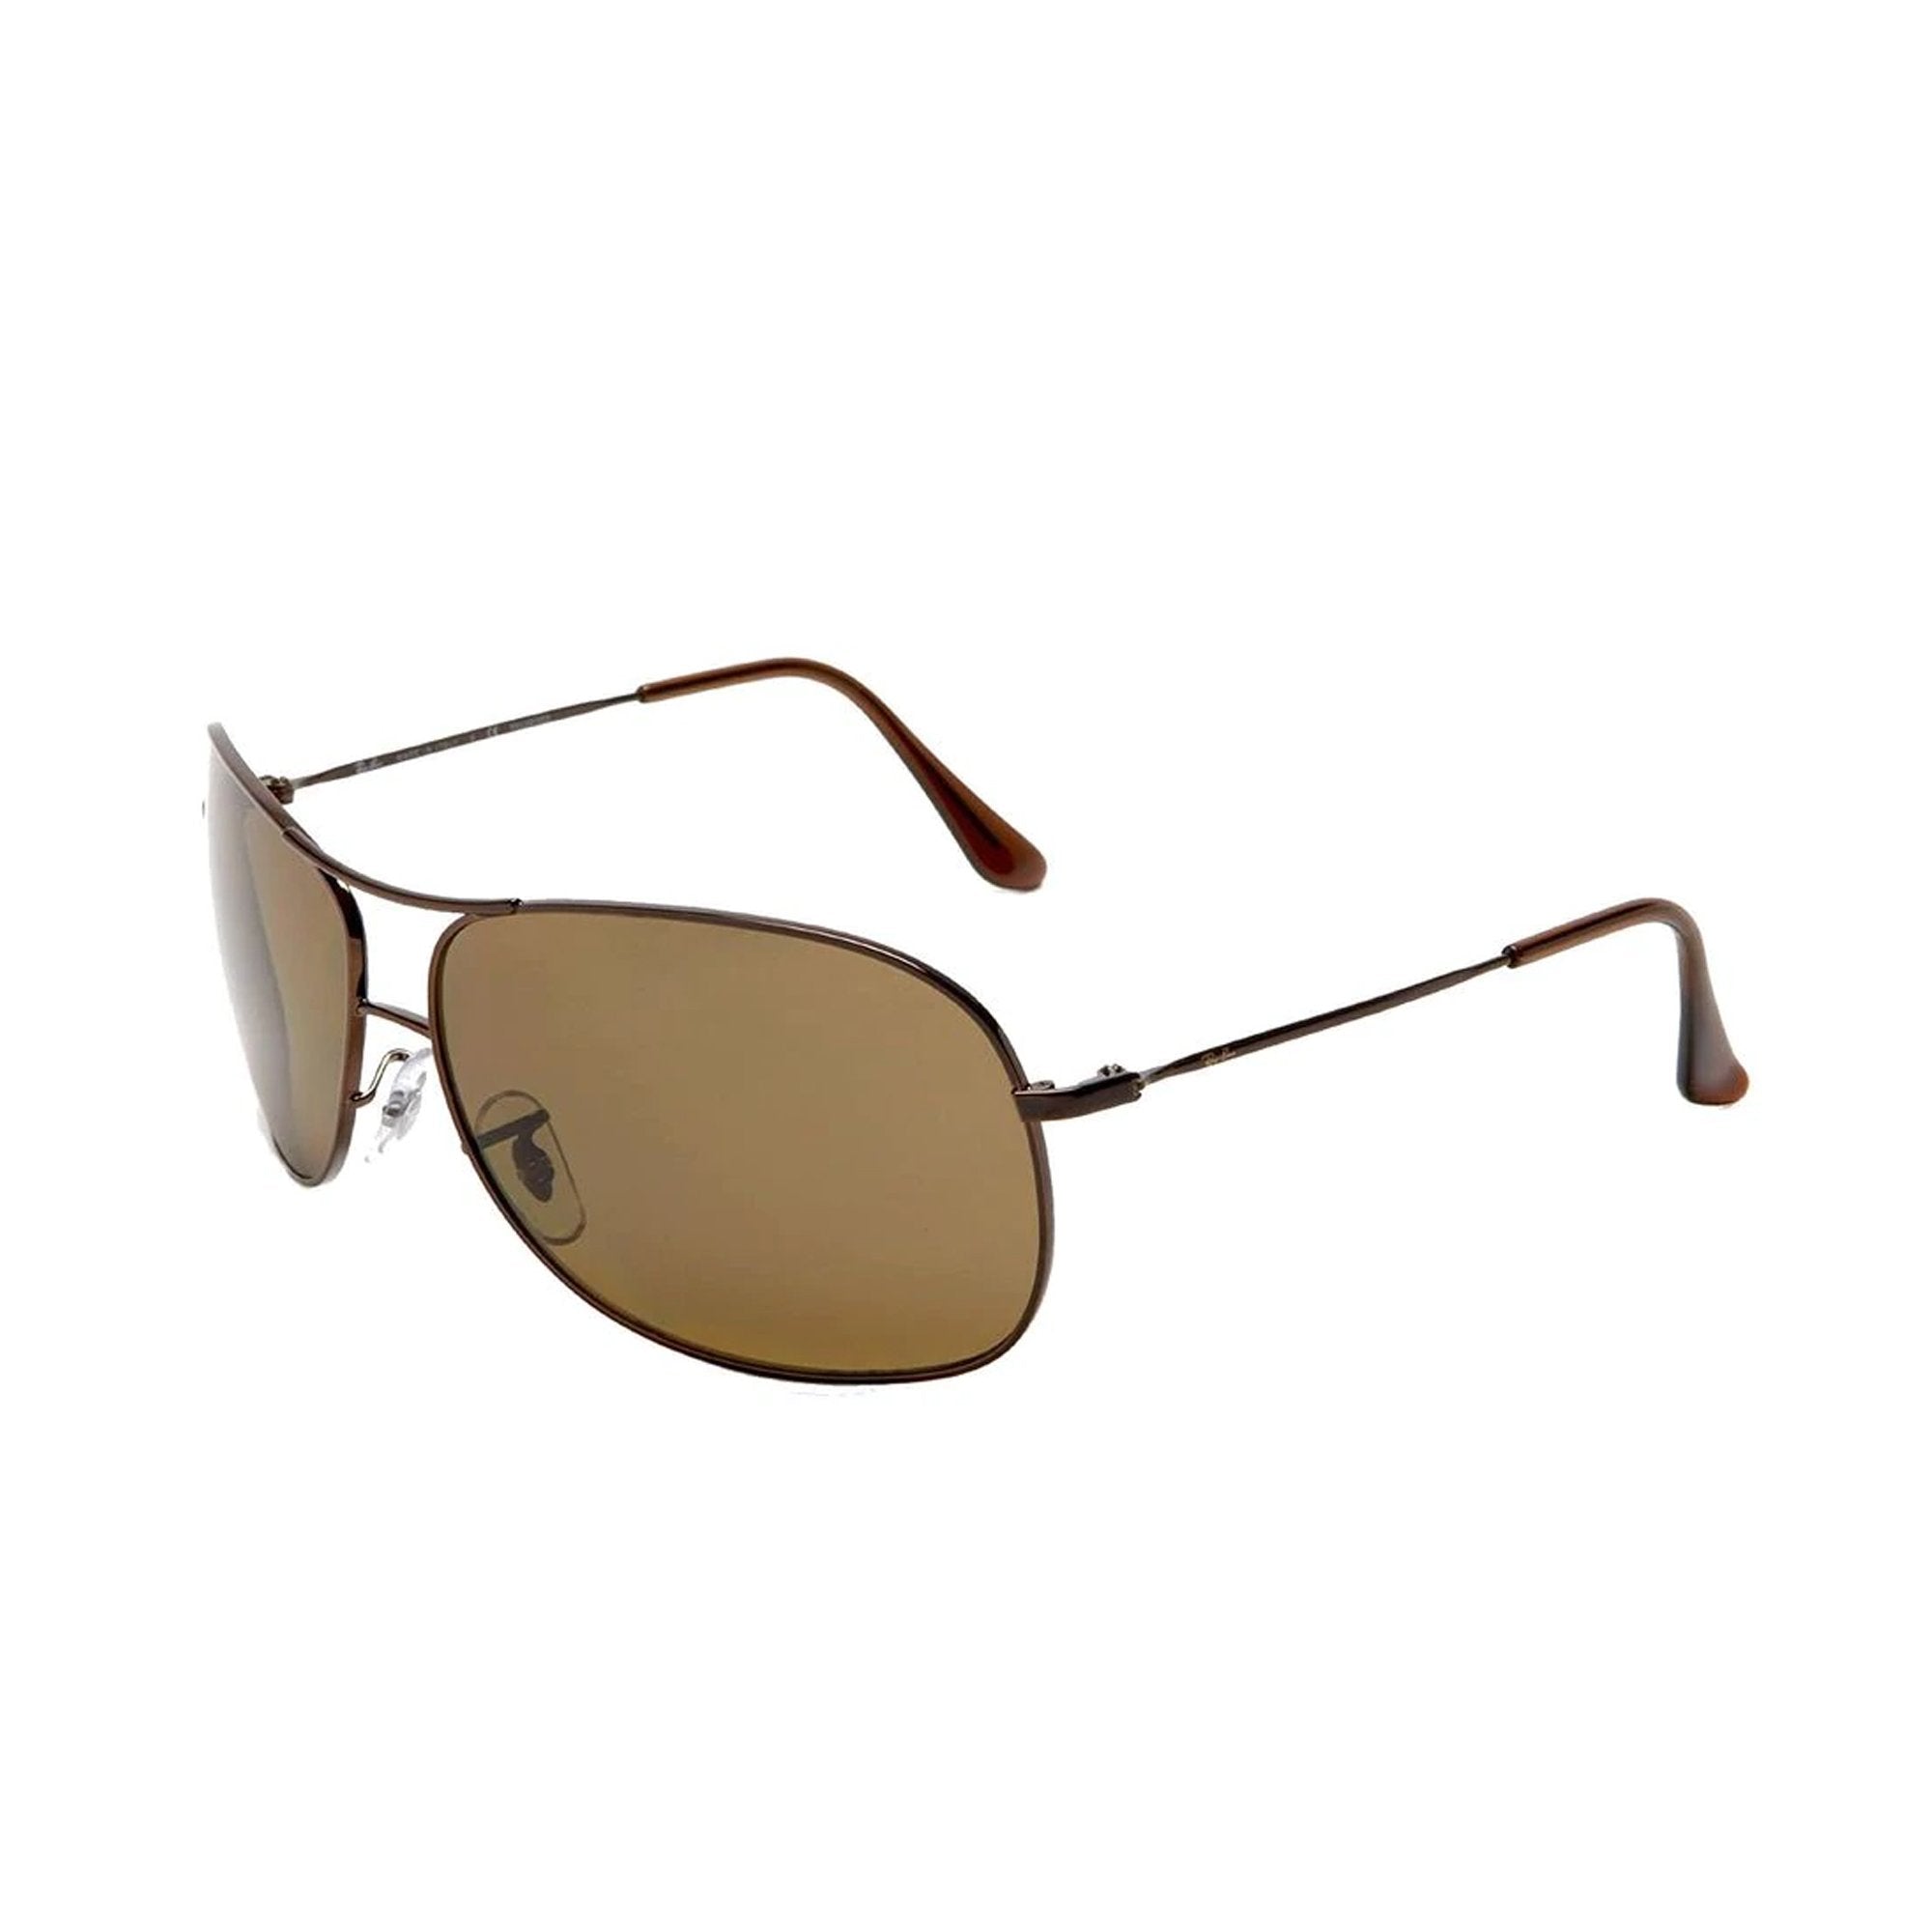 [RB3267-014/83_64] Mens Ray-Ban Aviator Polarized Sunglasses